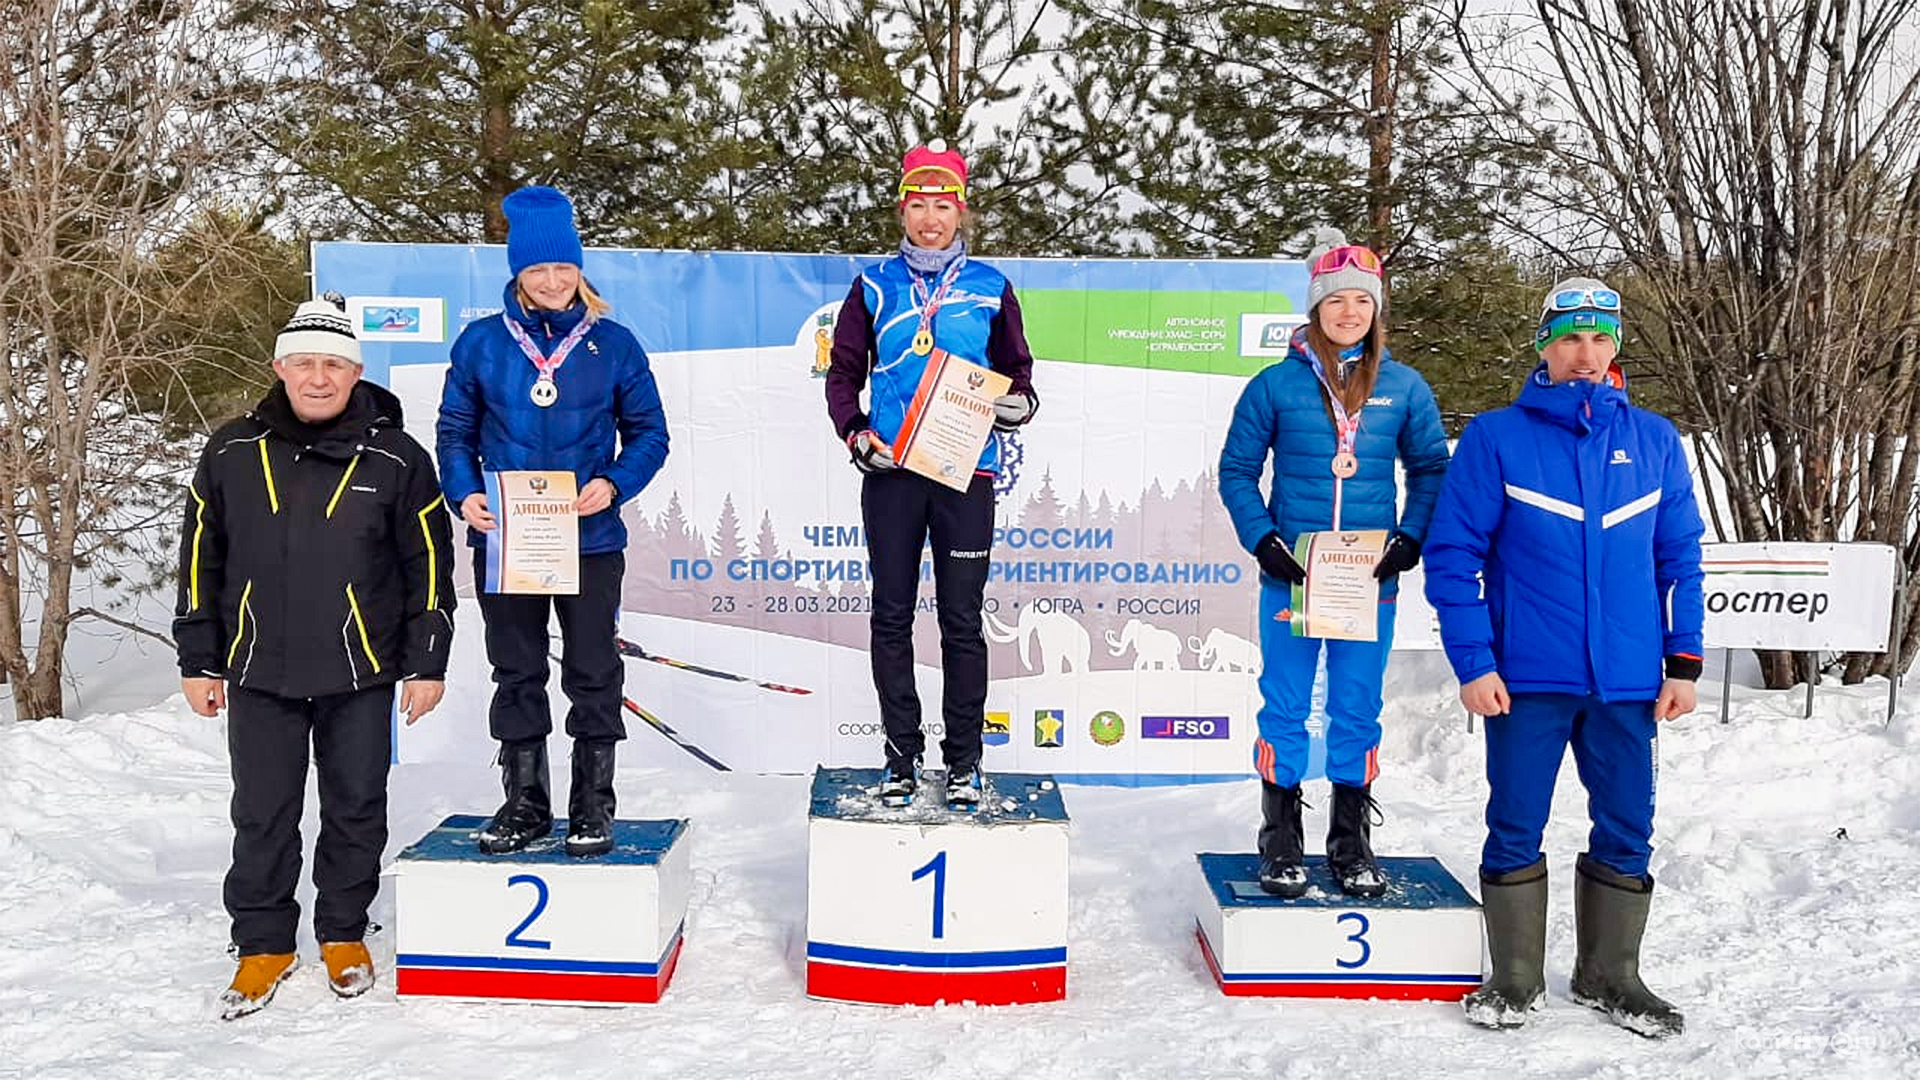 Лыжники из Комсомольска-на-Амуре стали триумфаторами чемпионата России по спортивному ориентированию